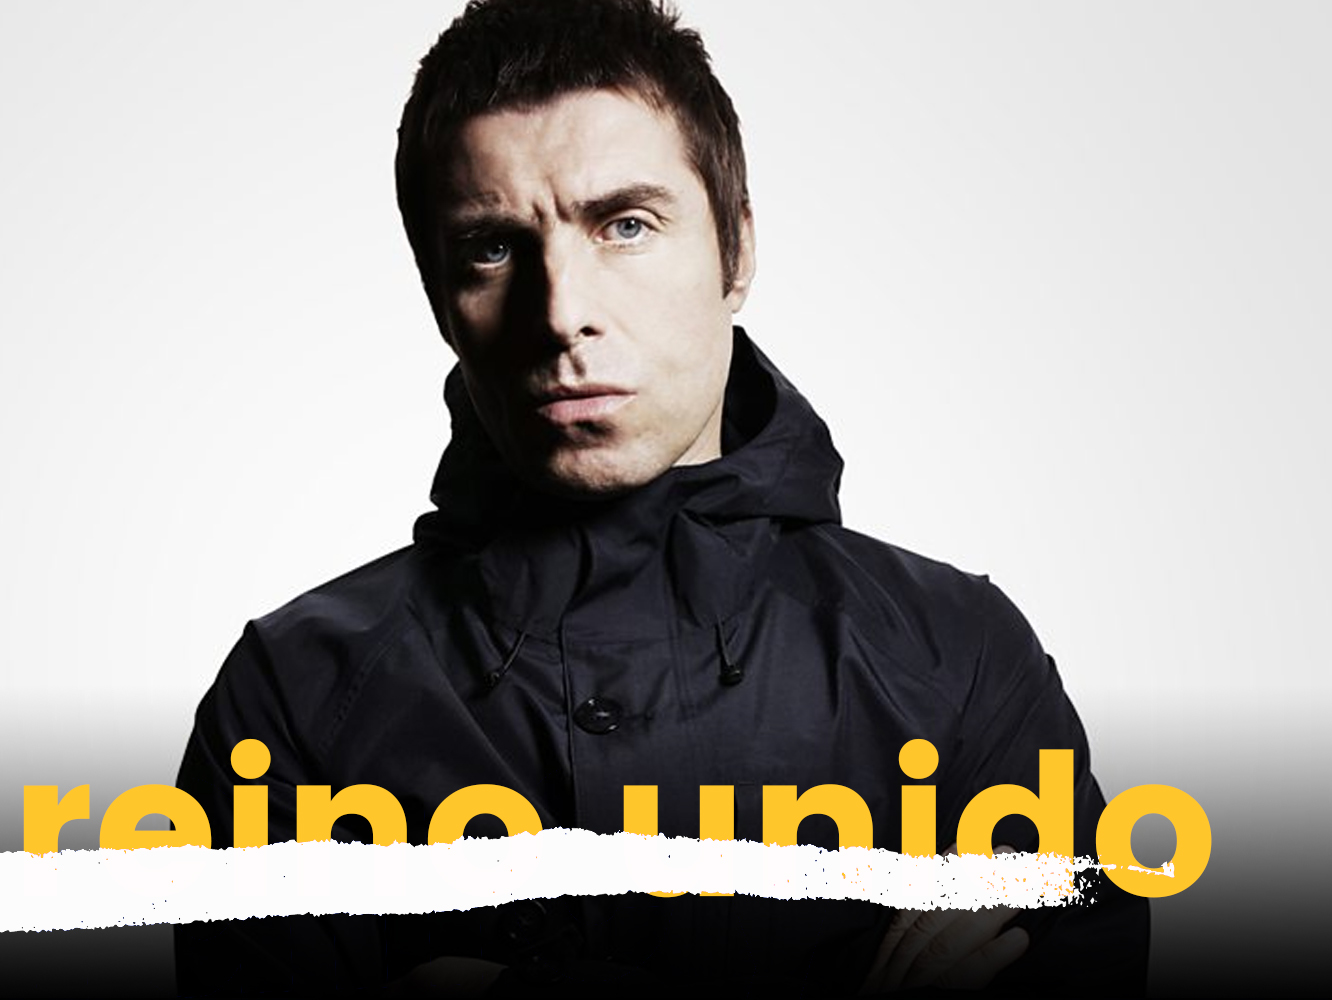 UK CHARTS | Liam Gallagher arrasa y supera las ventas del top15 combinado